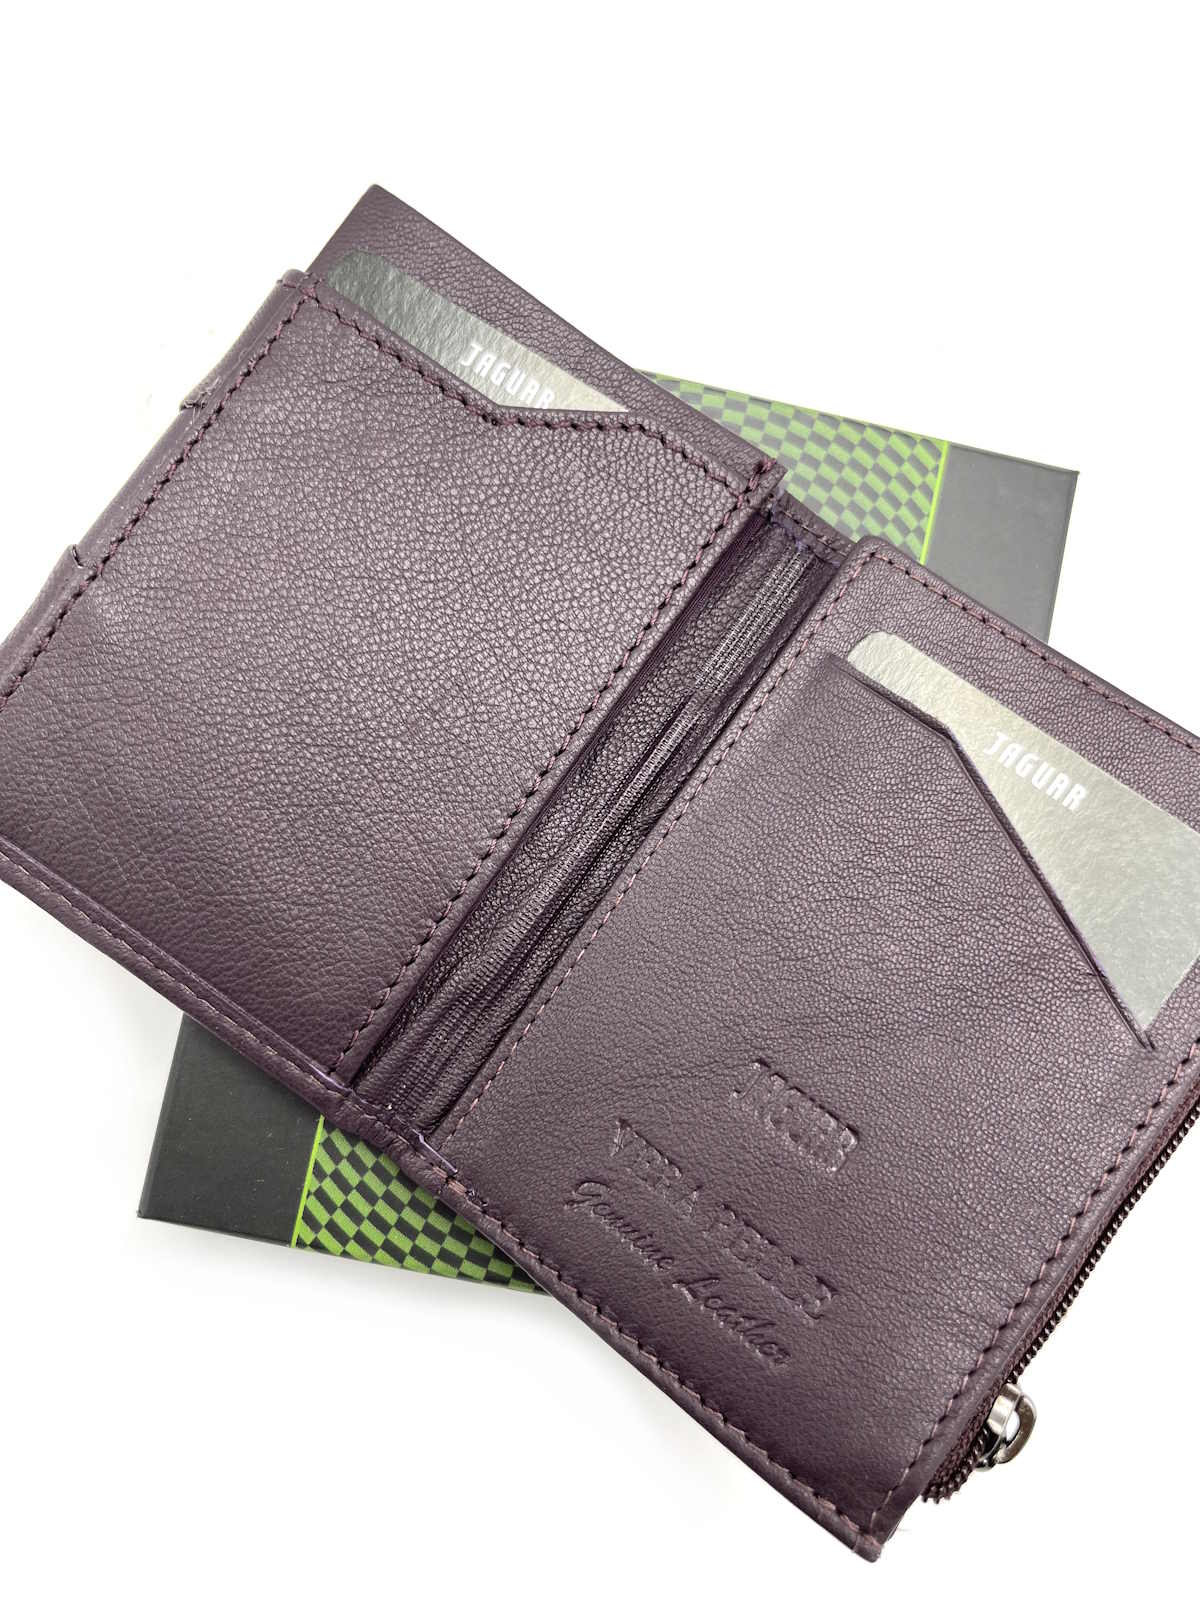 Genuine leather wallet, Jaguar, for men, art. PF774-51